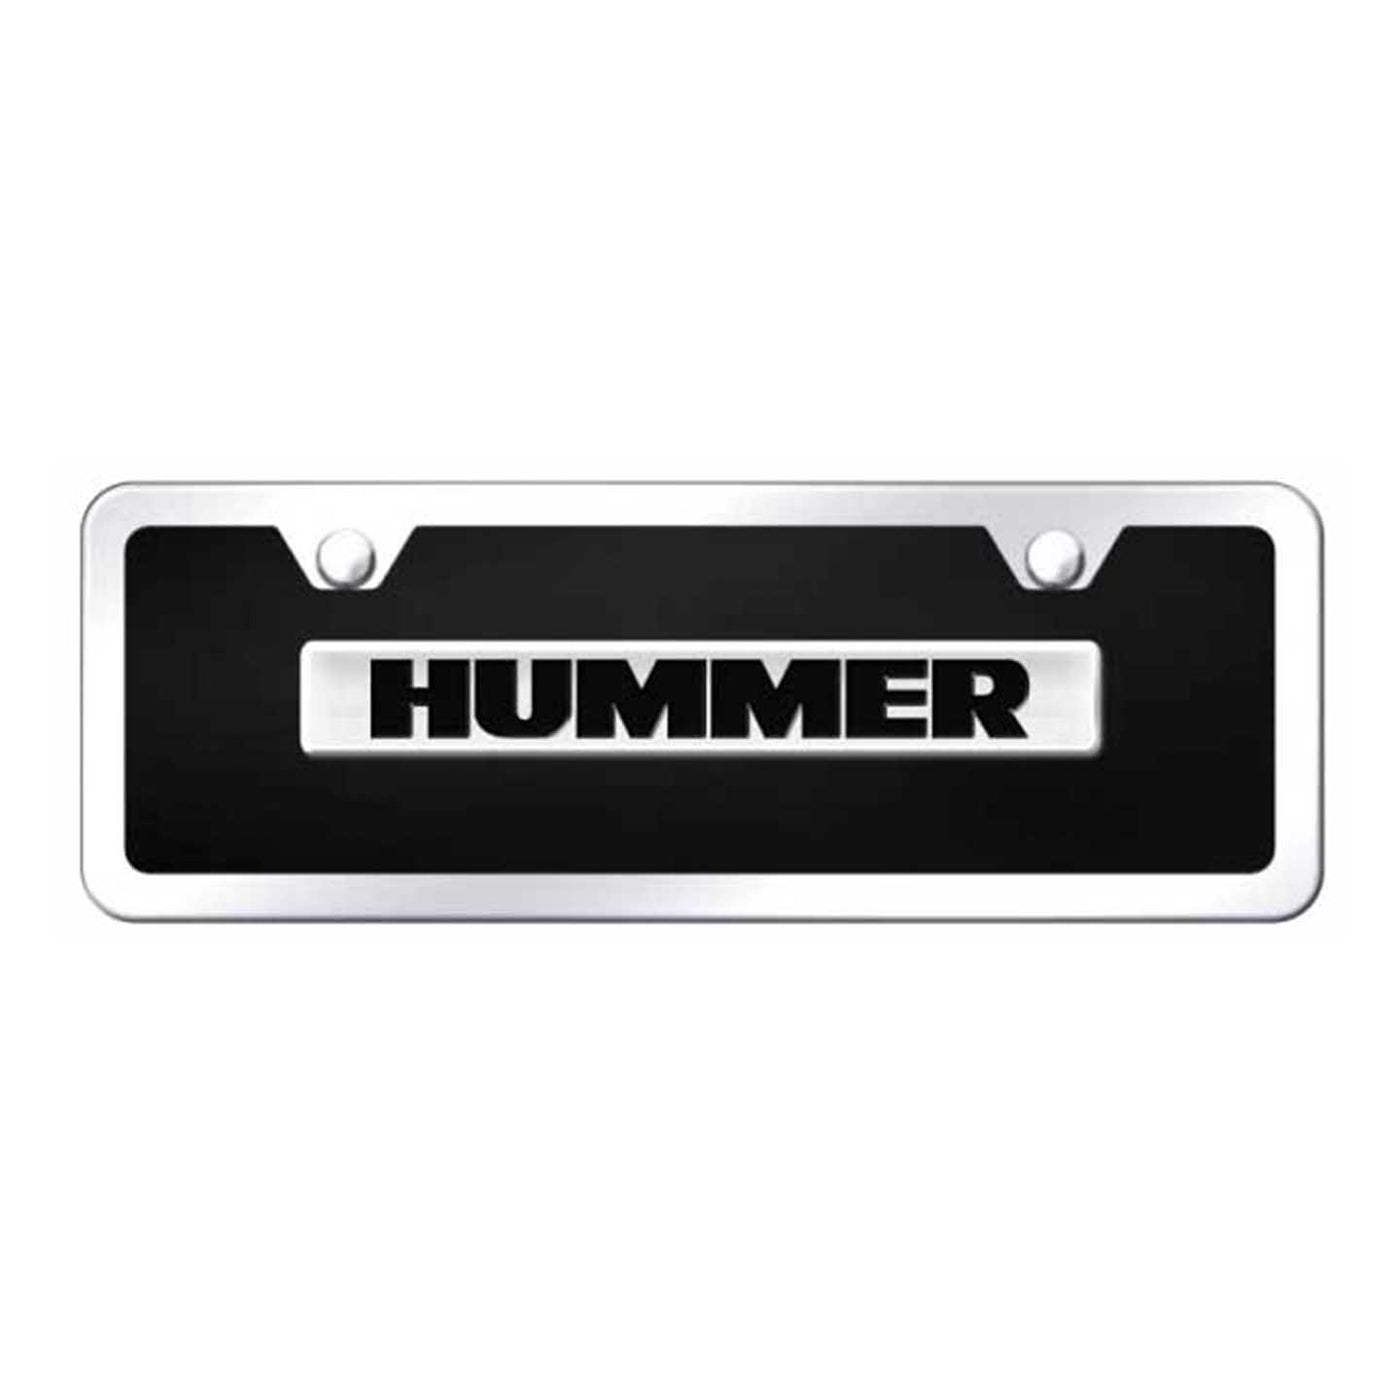 Hummer Name Acrylic Mini Kit - Chrome on Black